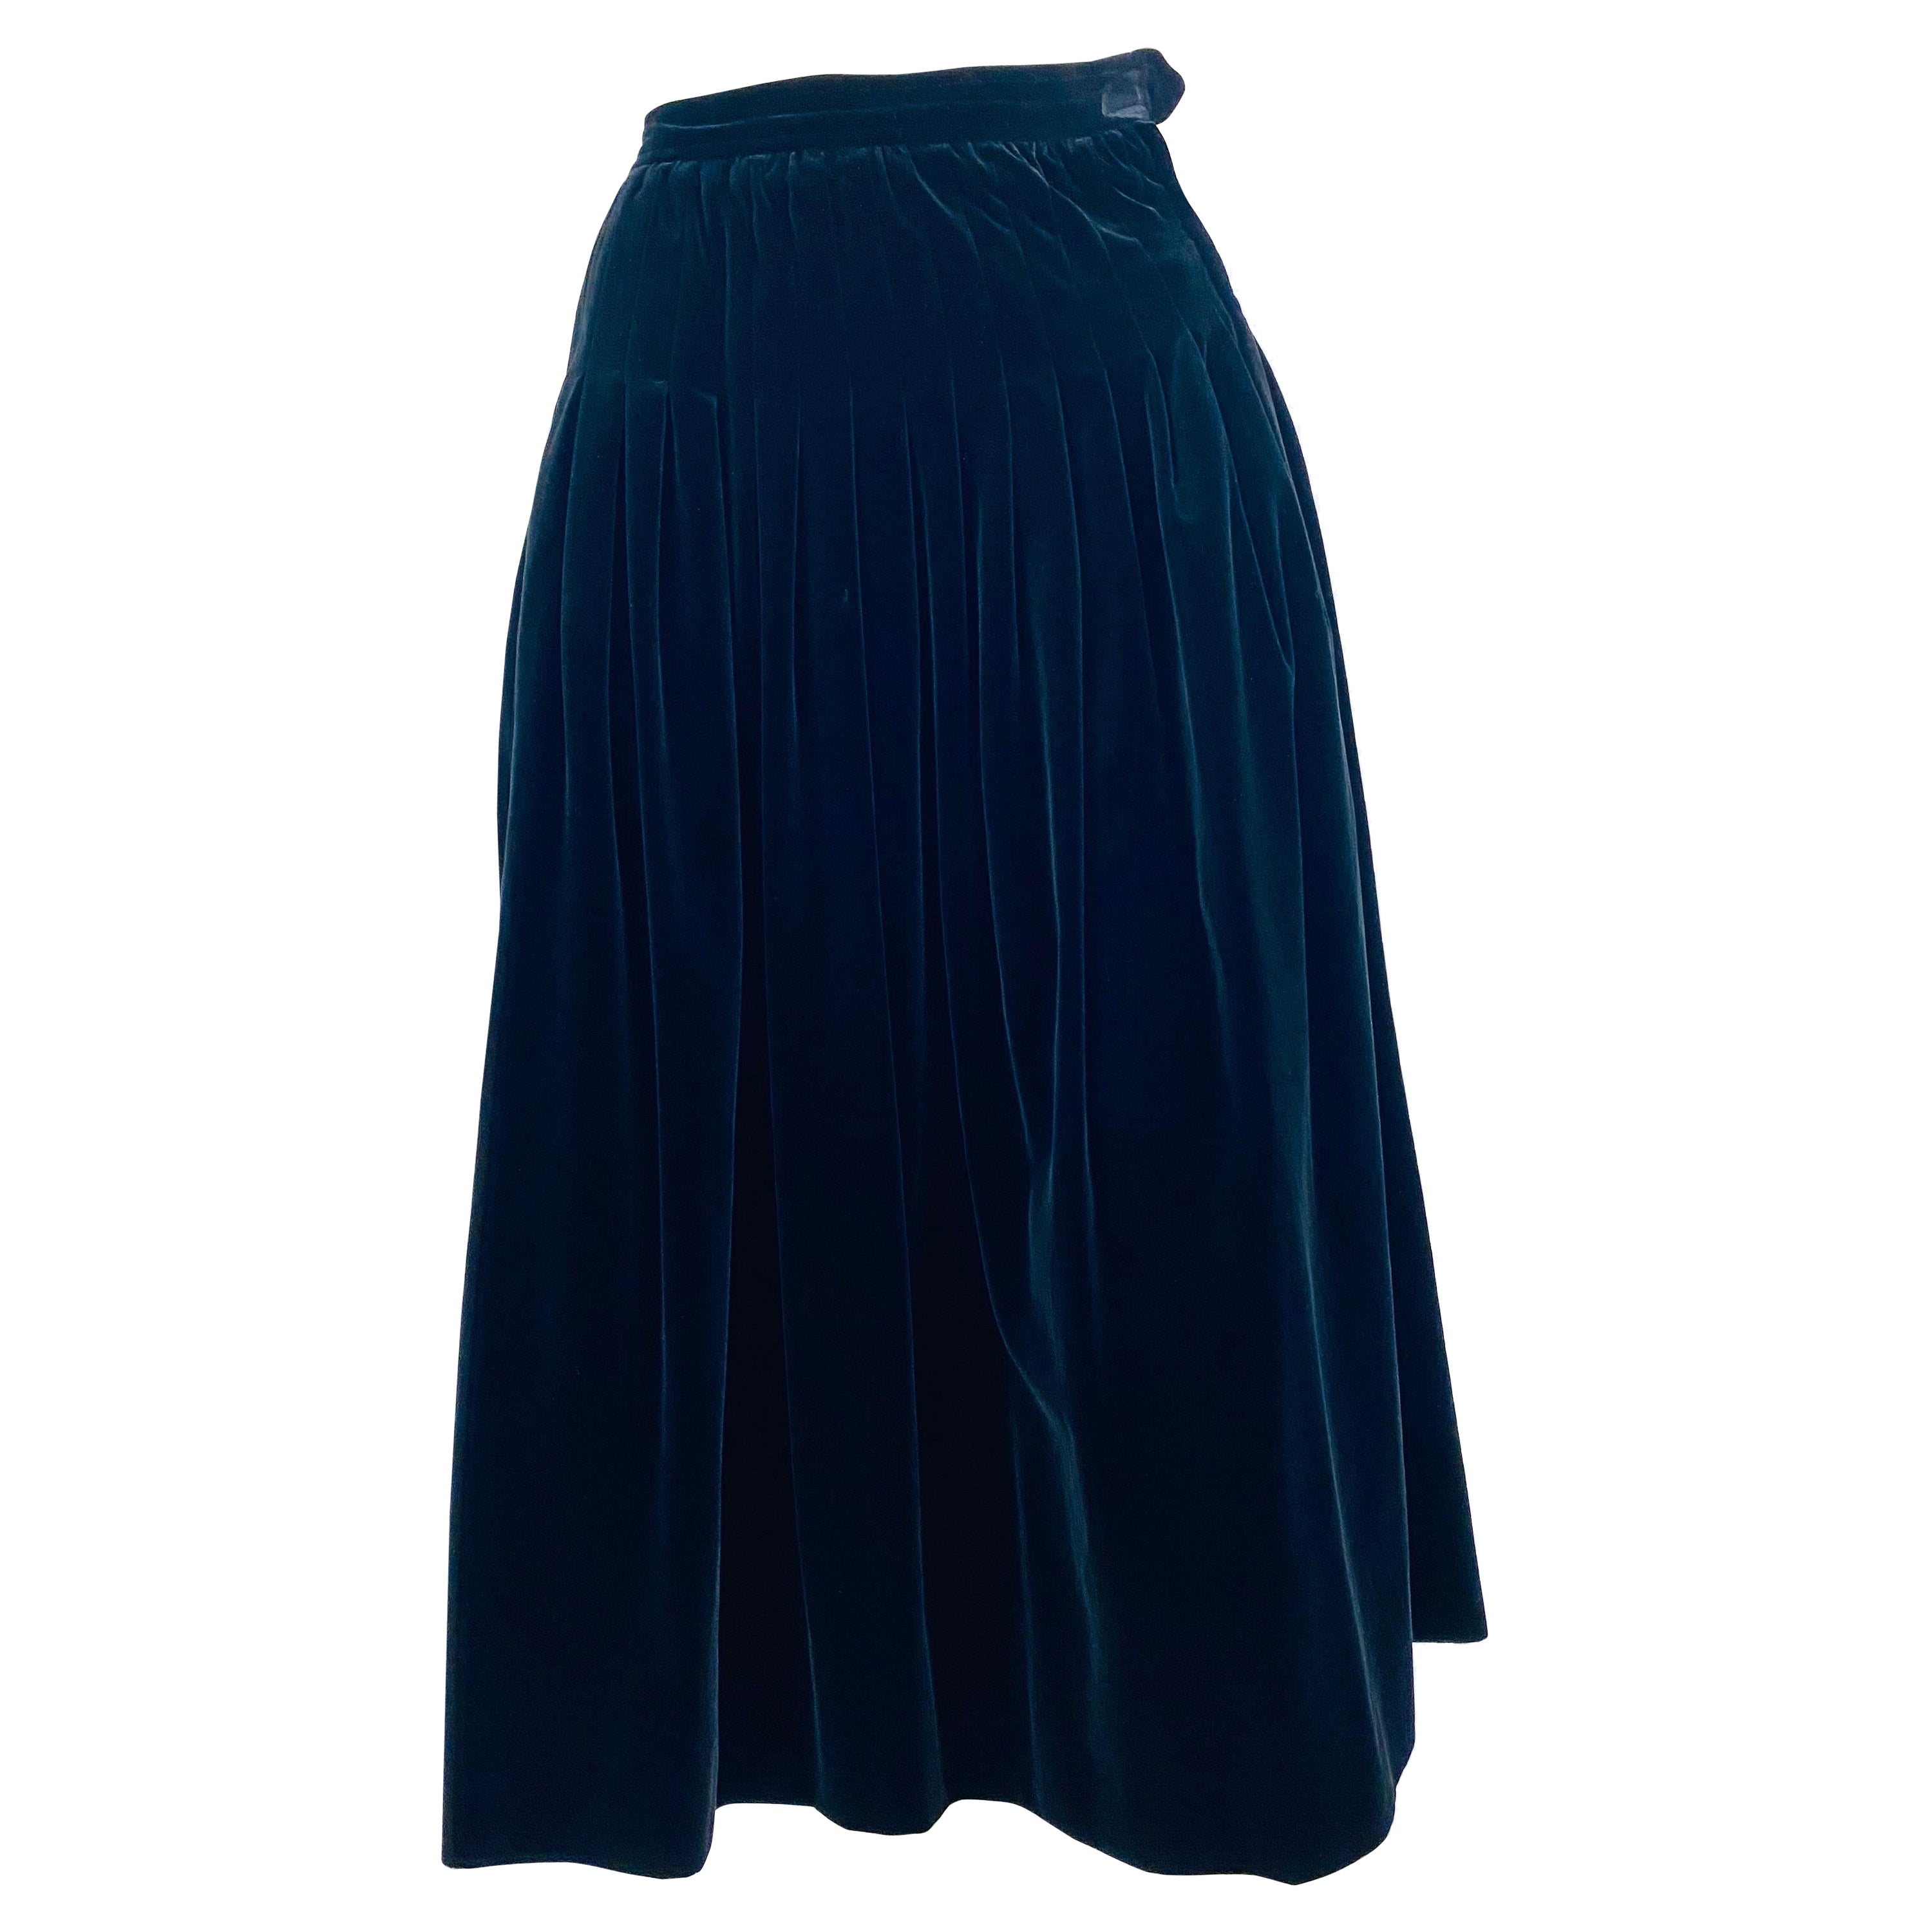 Vintage Yves saint laurent evening skirt from 1970 in black velvet For Sale